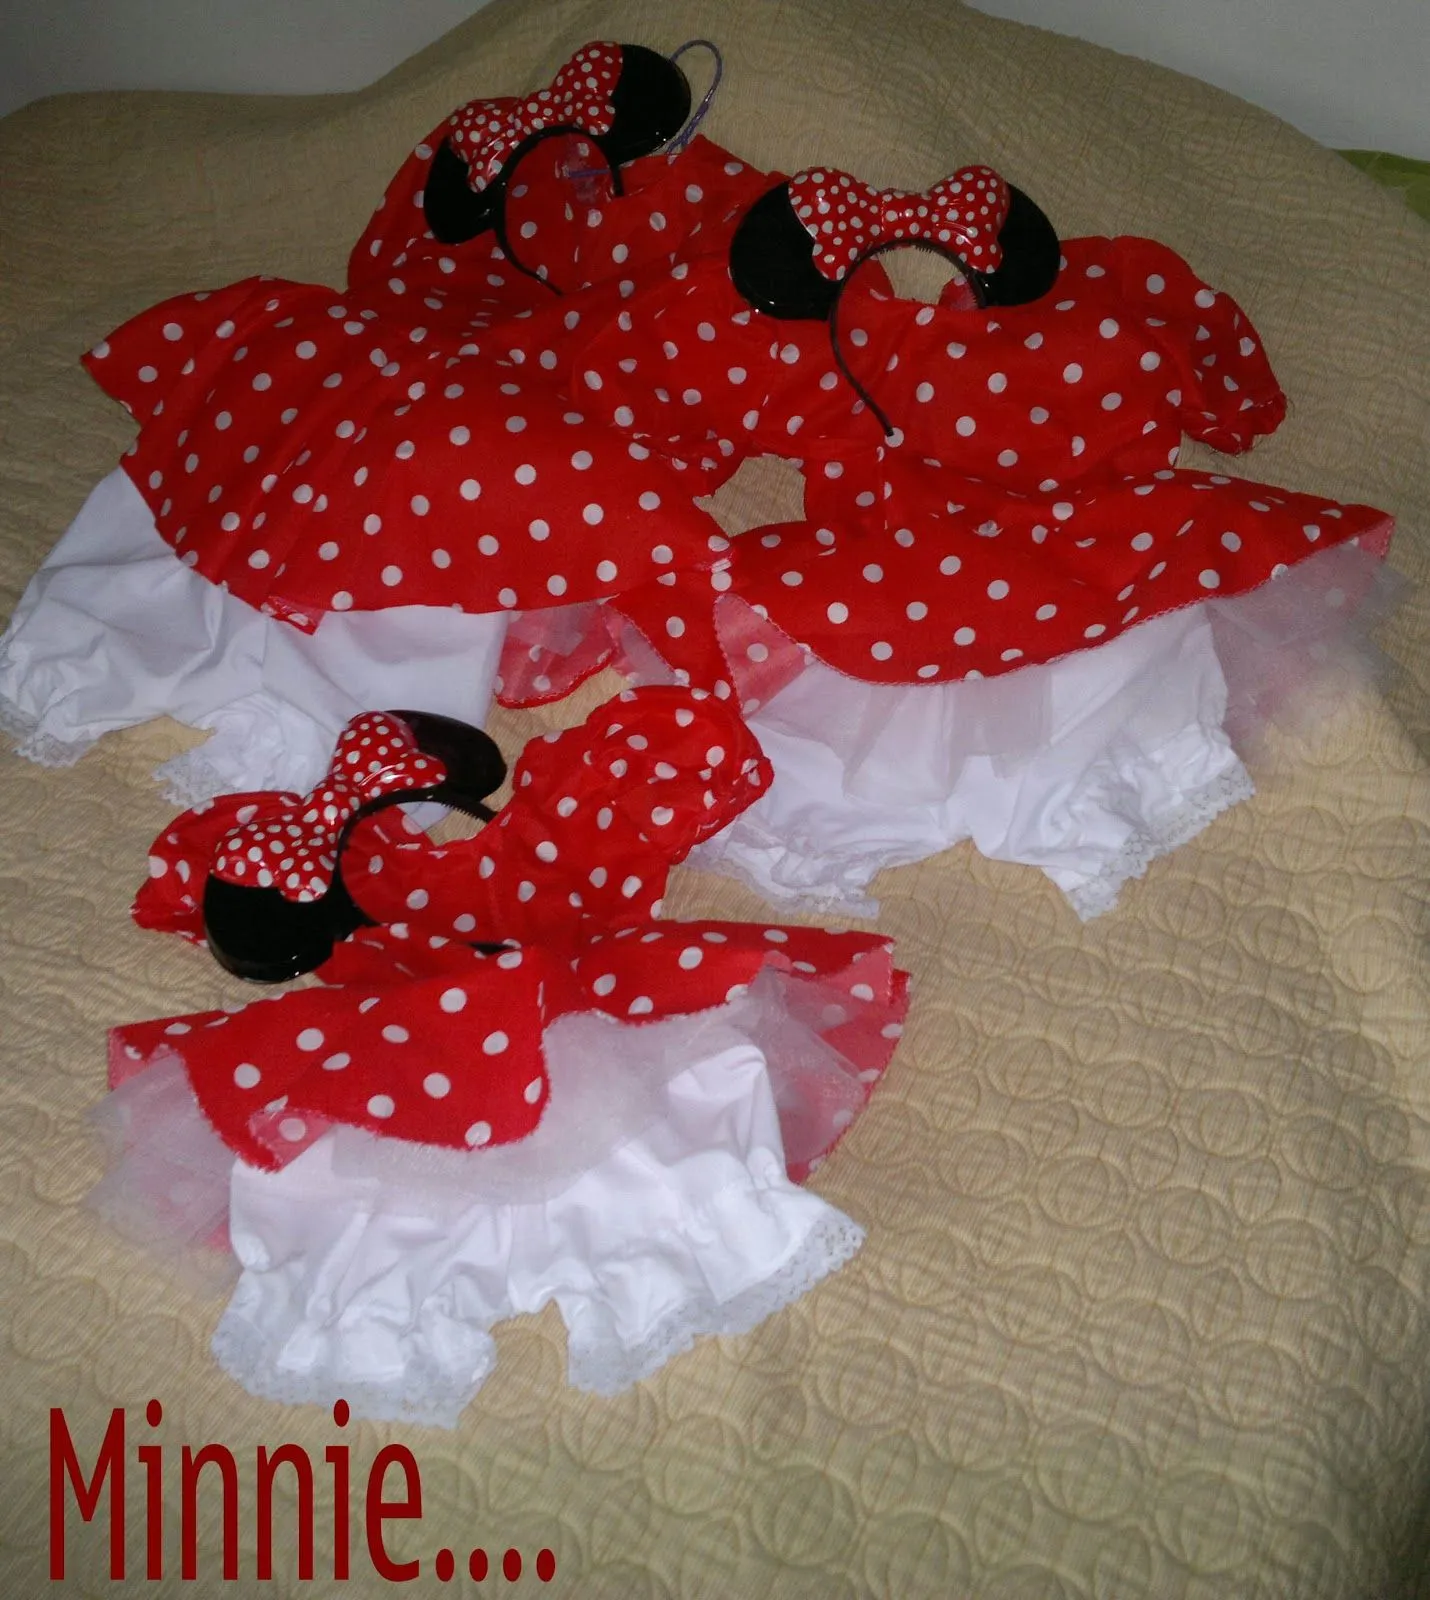 Diseños y Creaciones: Minnie